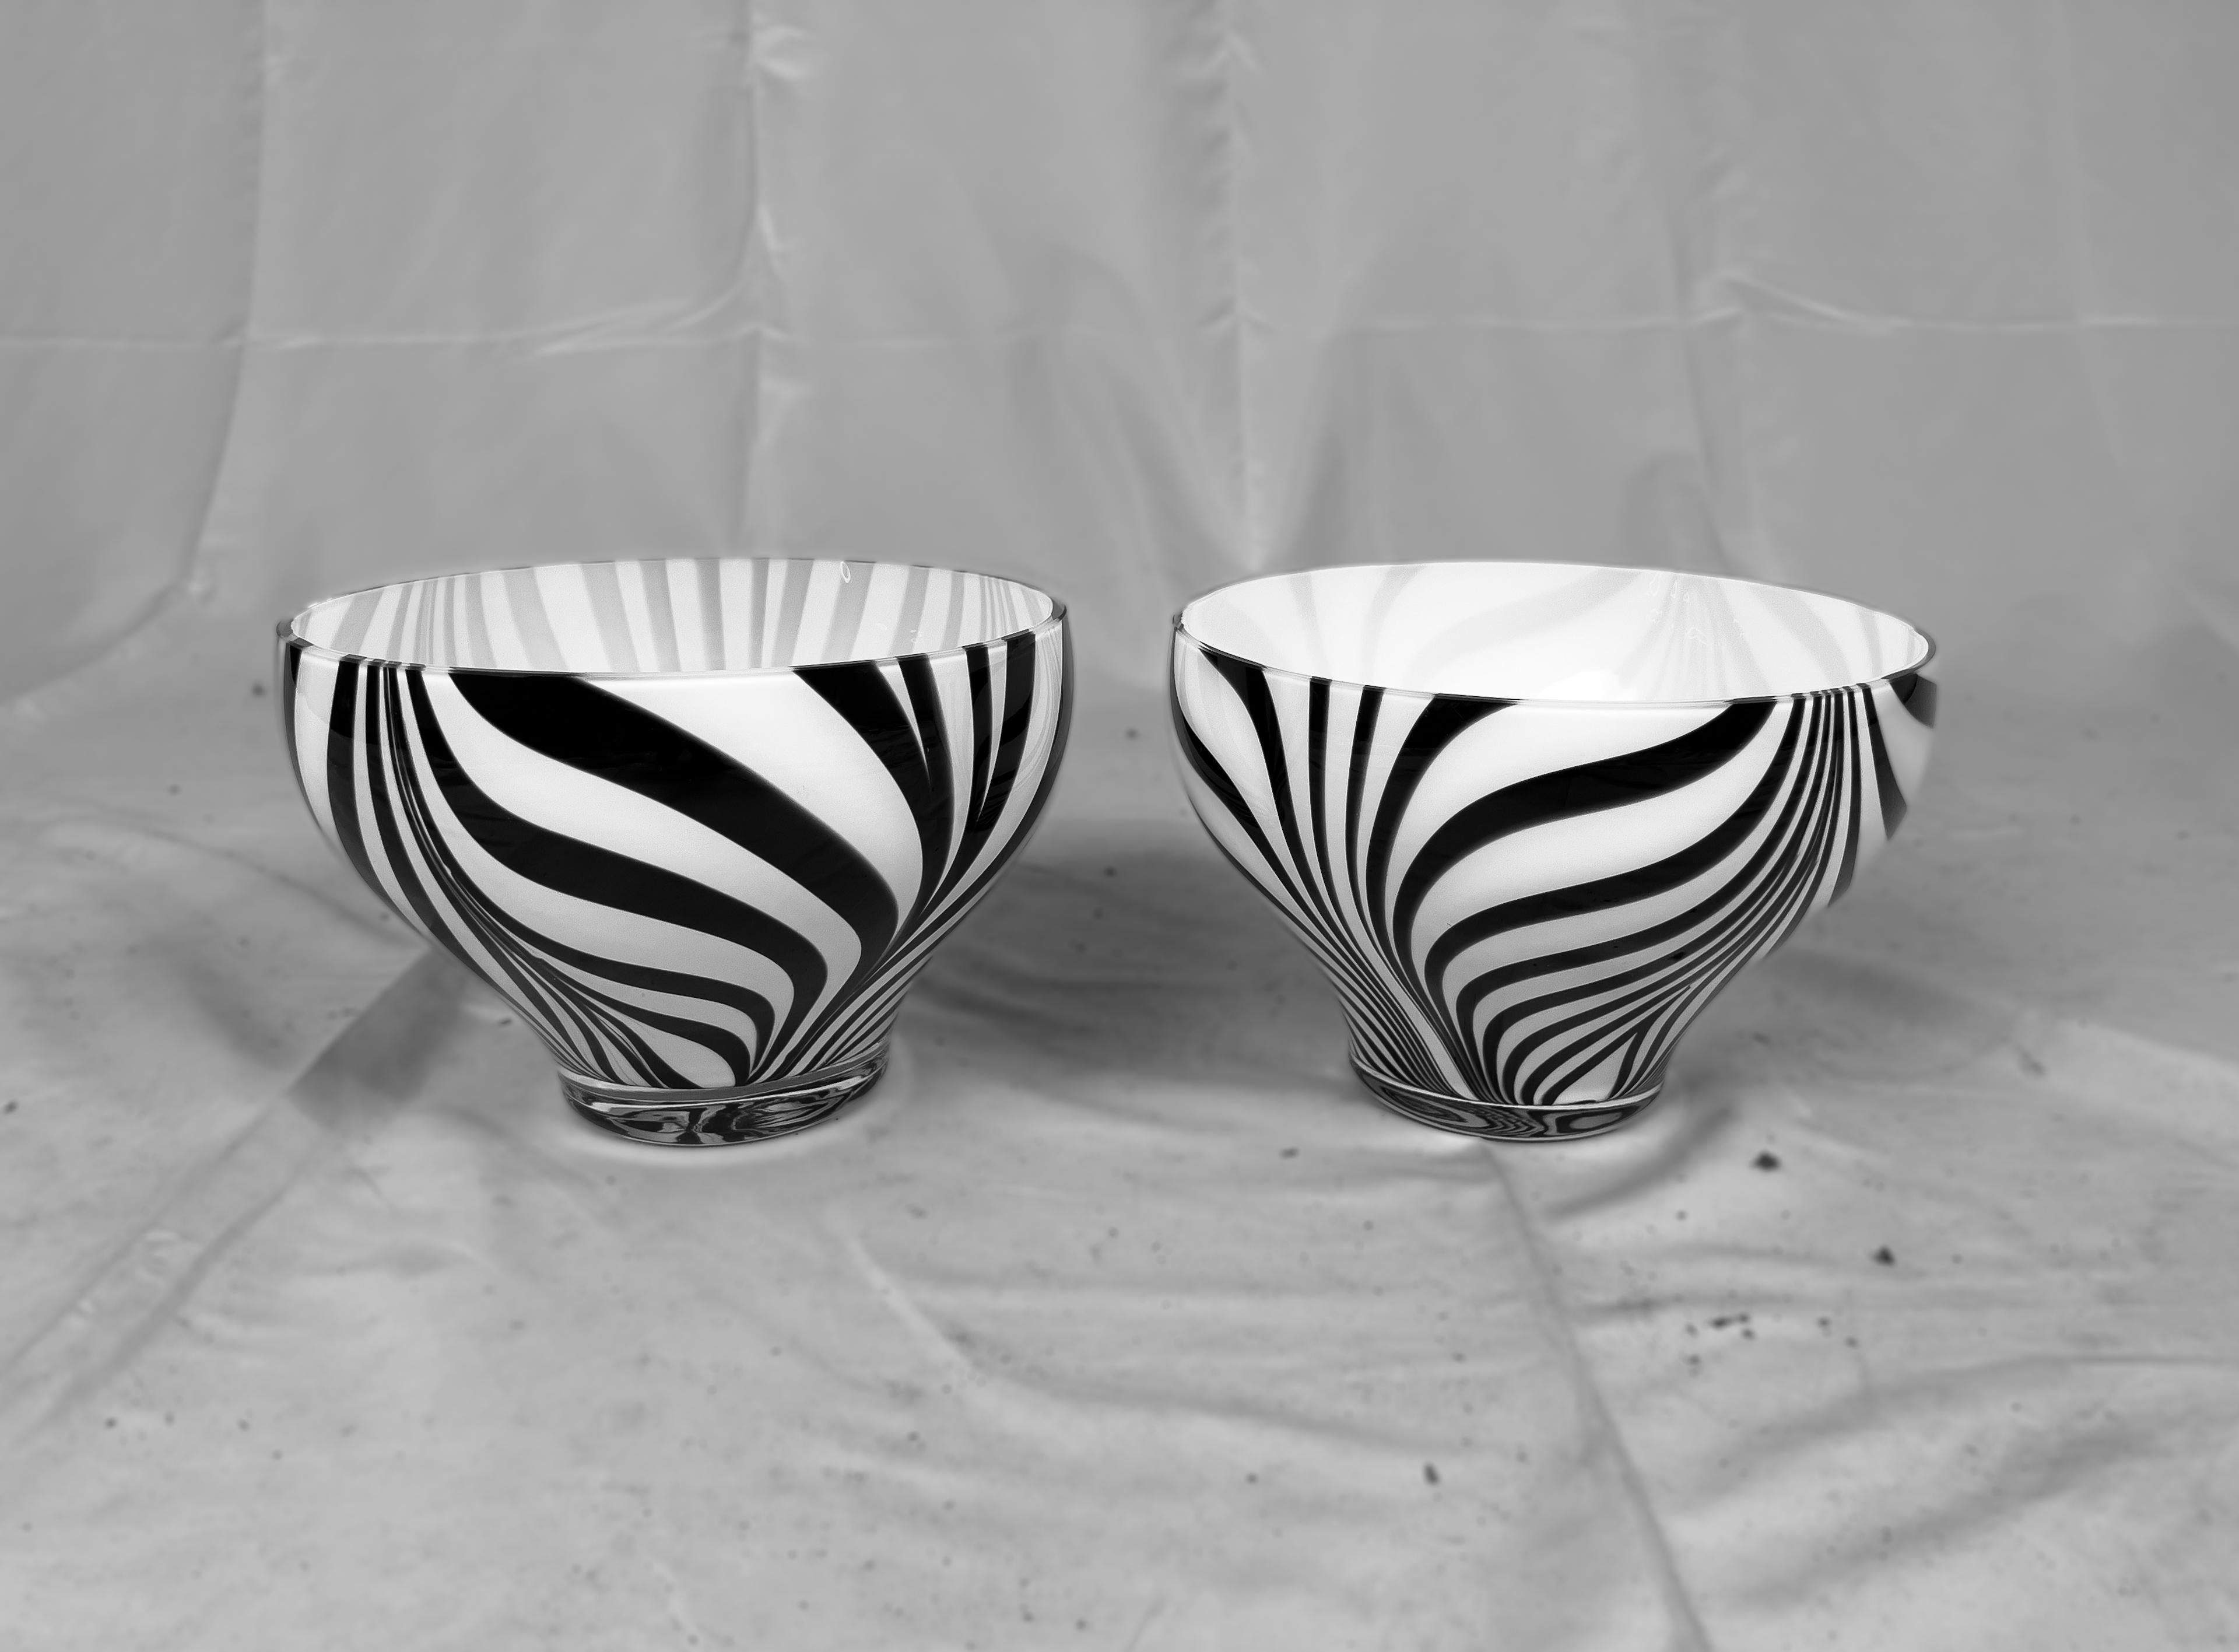 Pair of Murano glass Zebra bowls from Murano Italy.